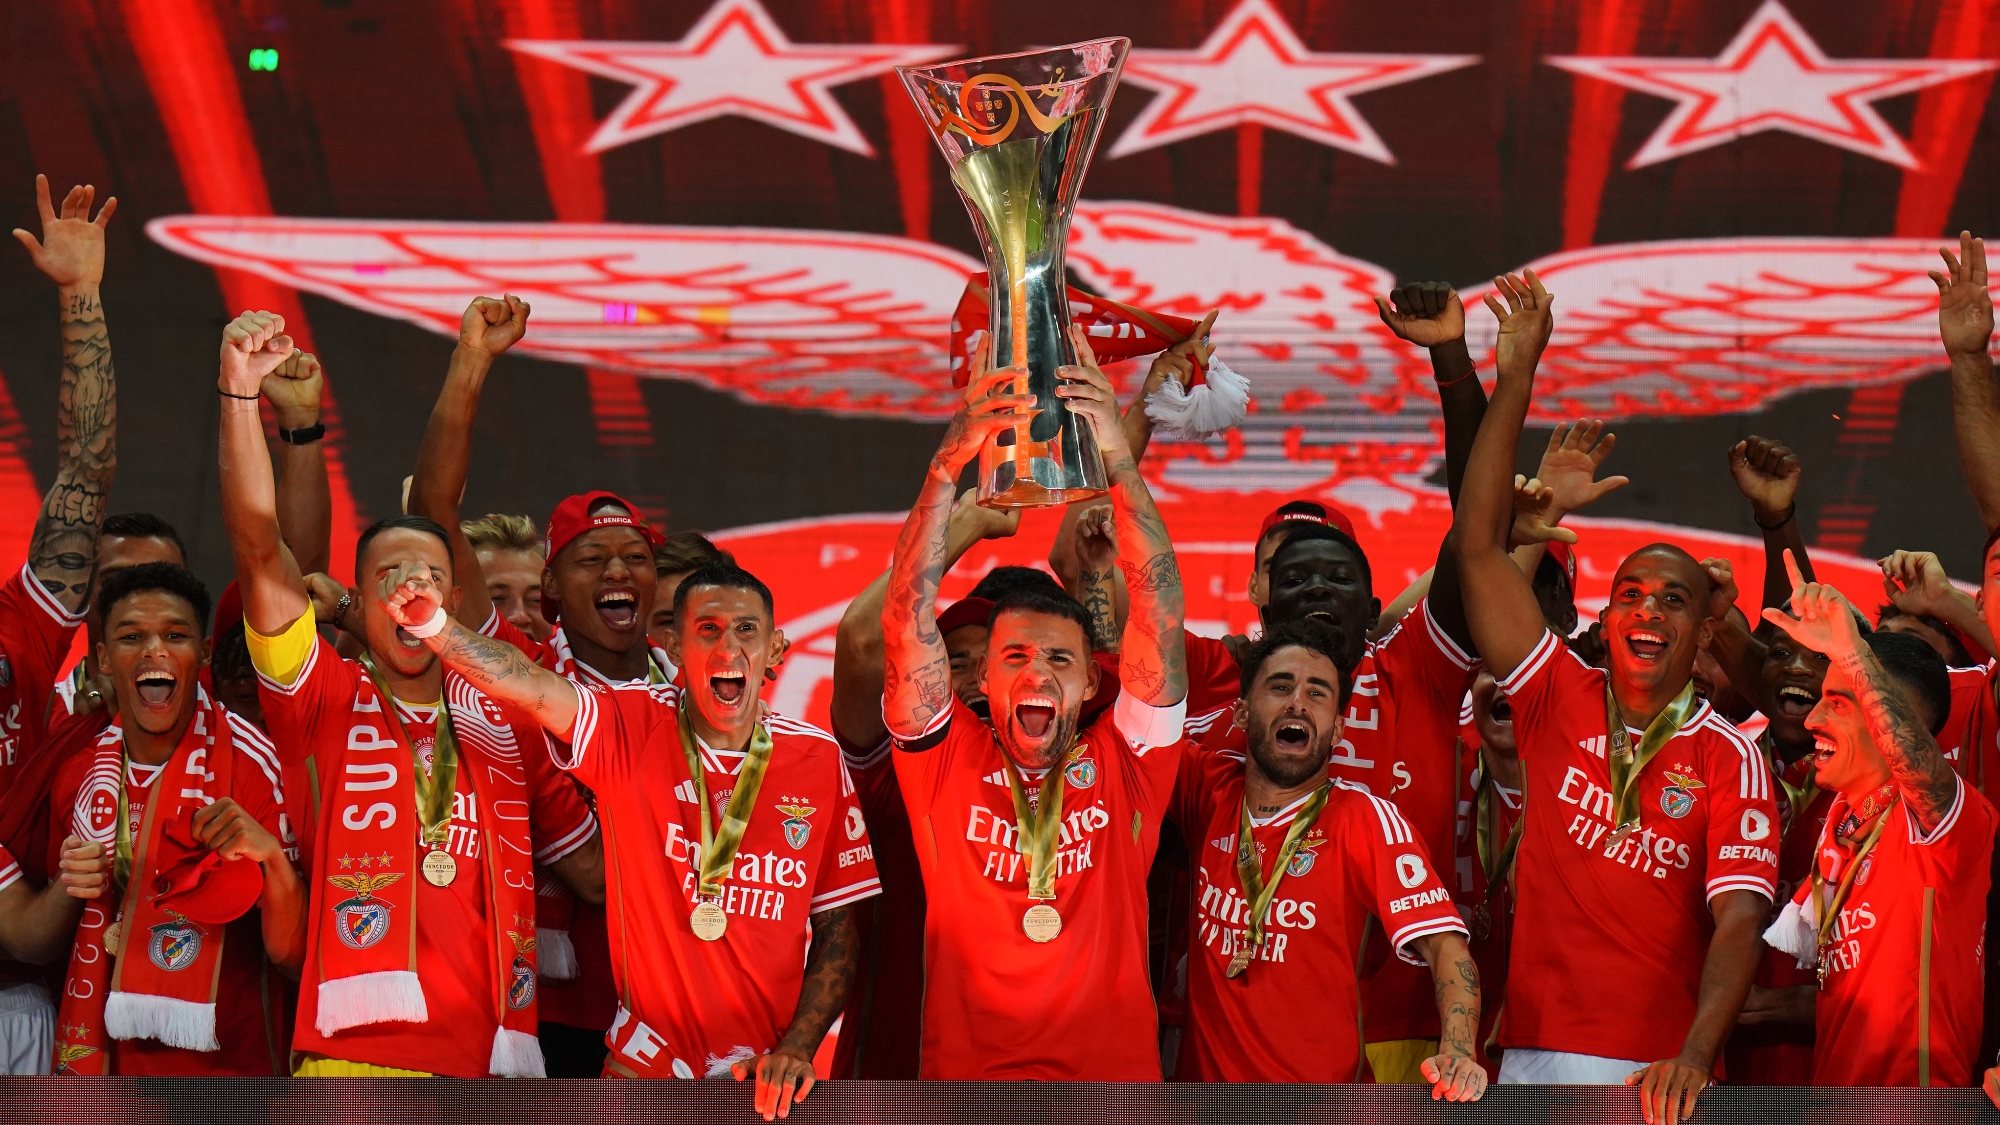 Antevisão da I Liga portuguesa: Dérbi Sporting-Benfica nas 'contas' do  título em ronda tranquila para FC Porto